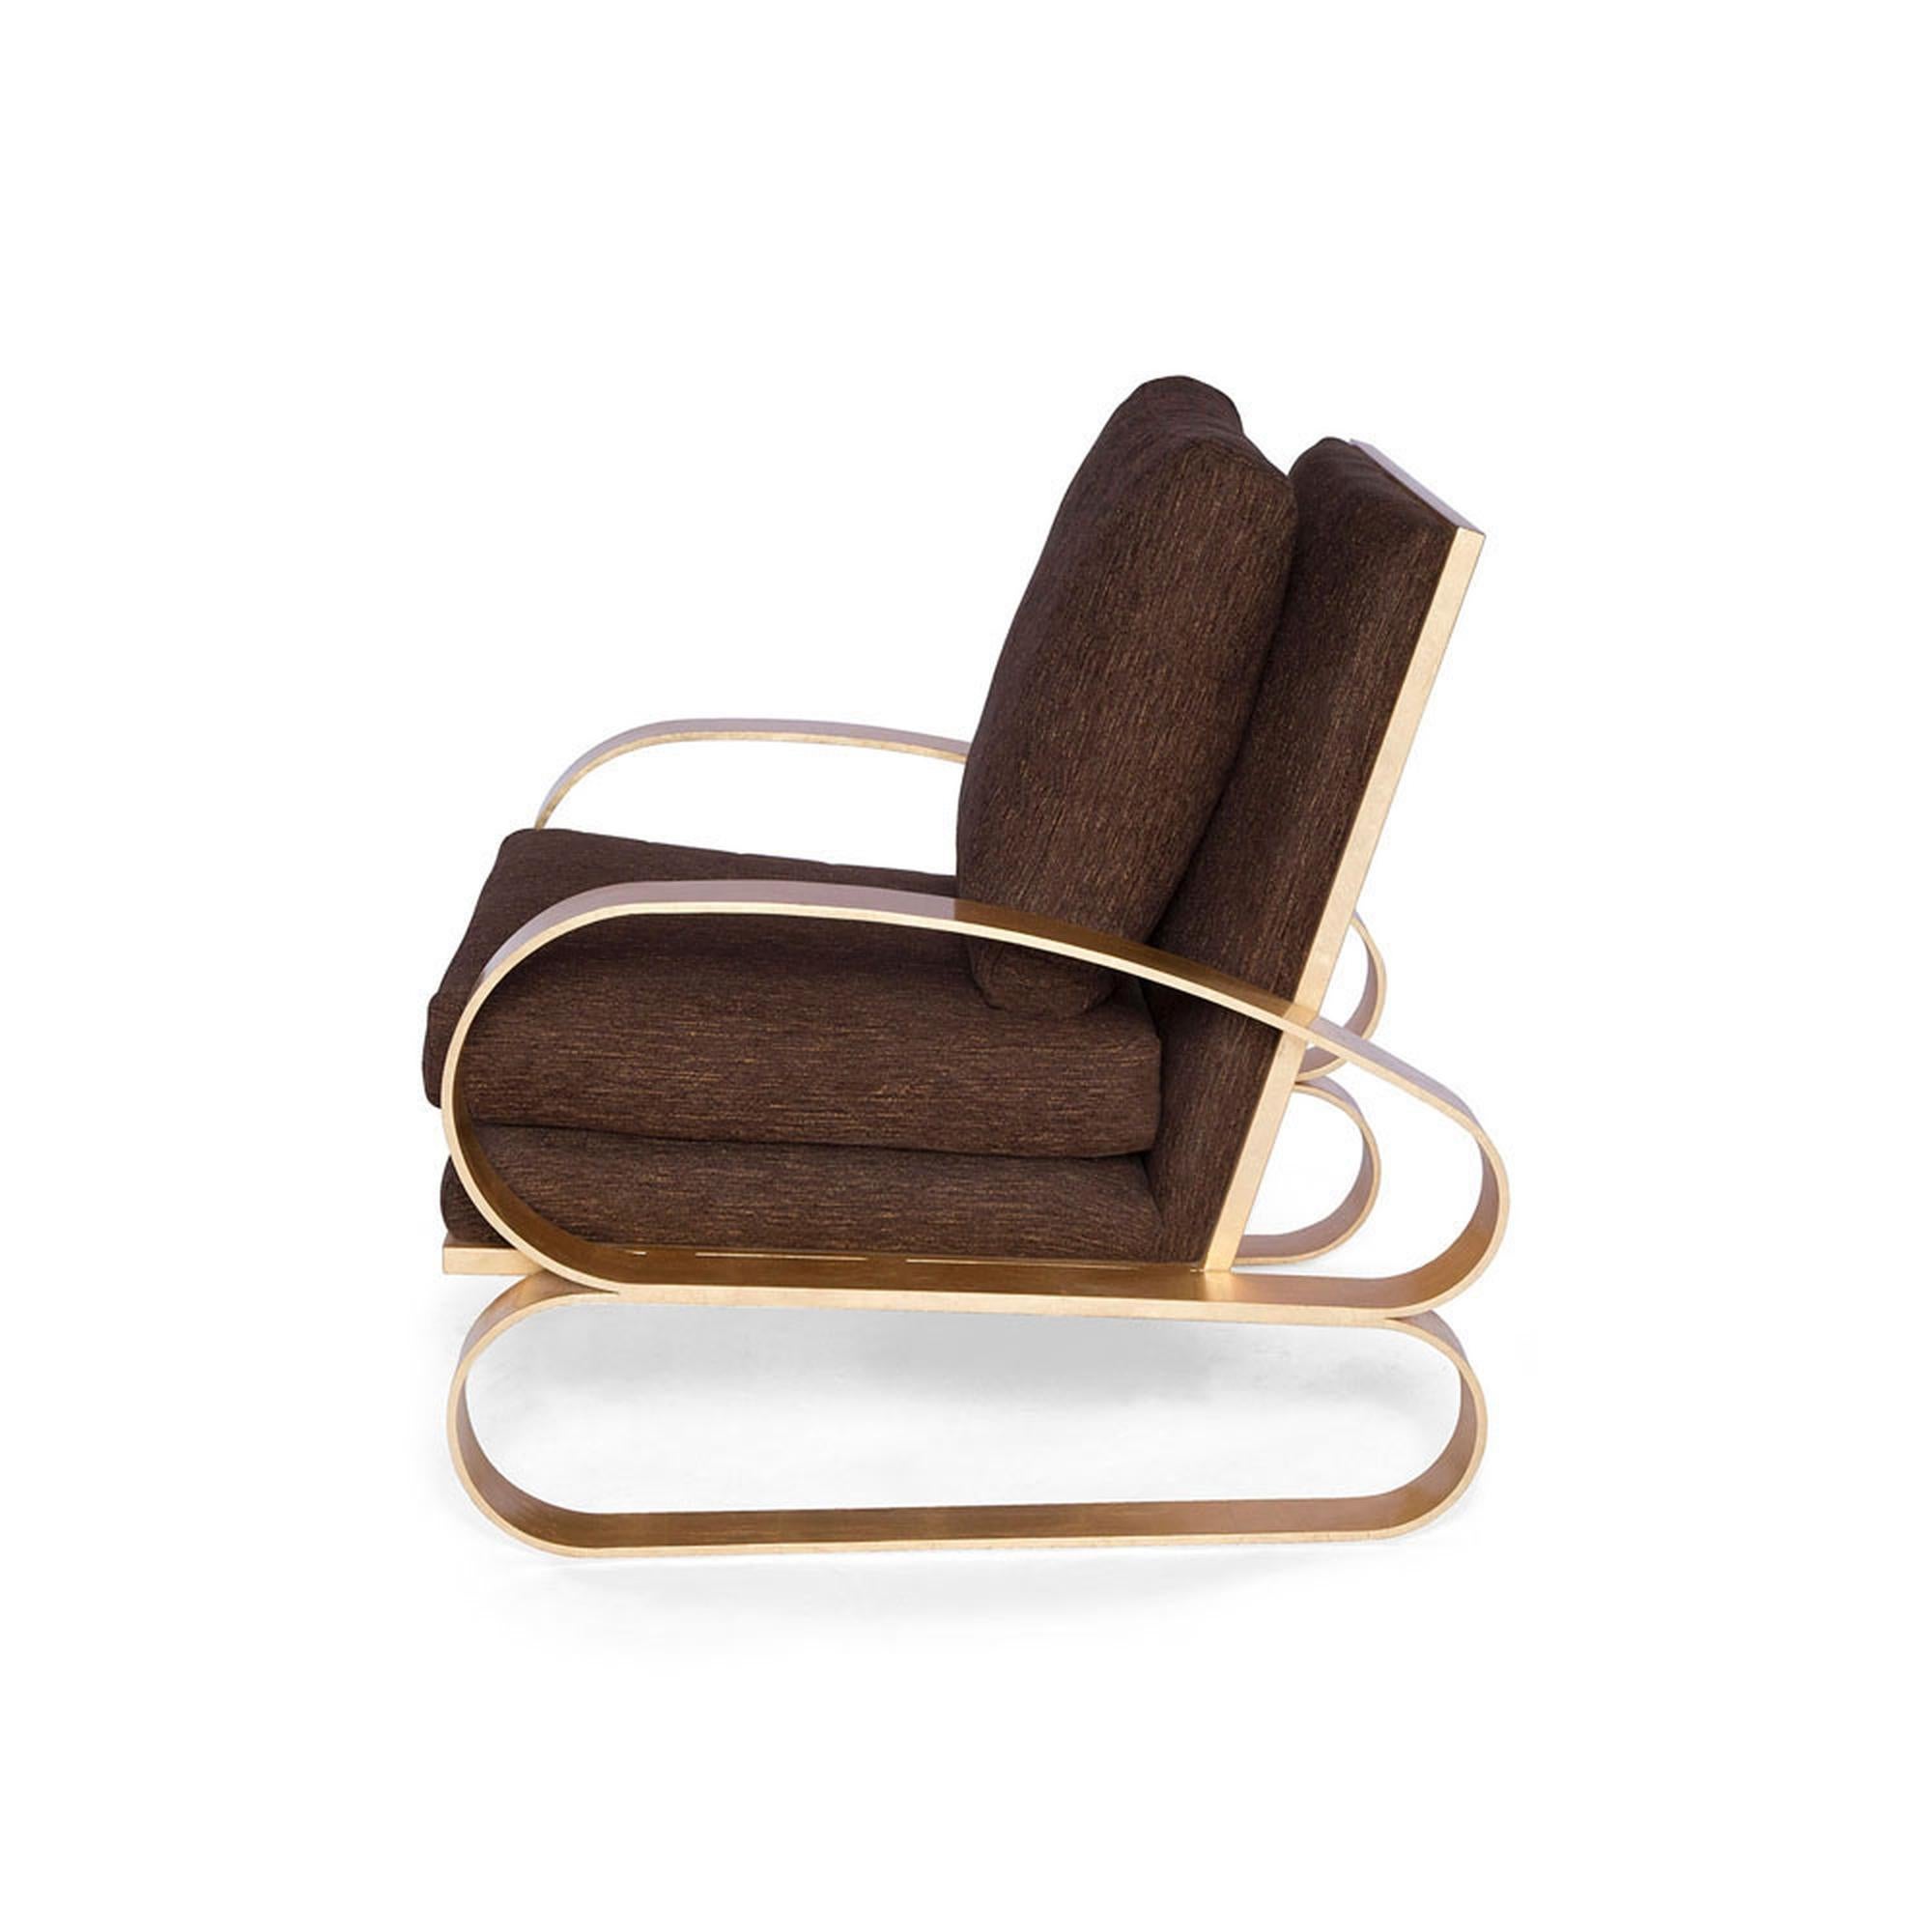 Mit seinem überdimensionalen architektonischen Metallgestell und der luxuriösen, tief gepolsterten Sitzfläche spielt der Monterey Lounge Chair II mit den Proportionen und erzielt so eine beeindruckende Wirkung. Der handvergoldete Sockel und die